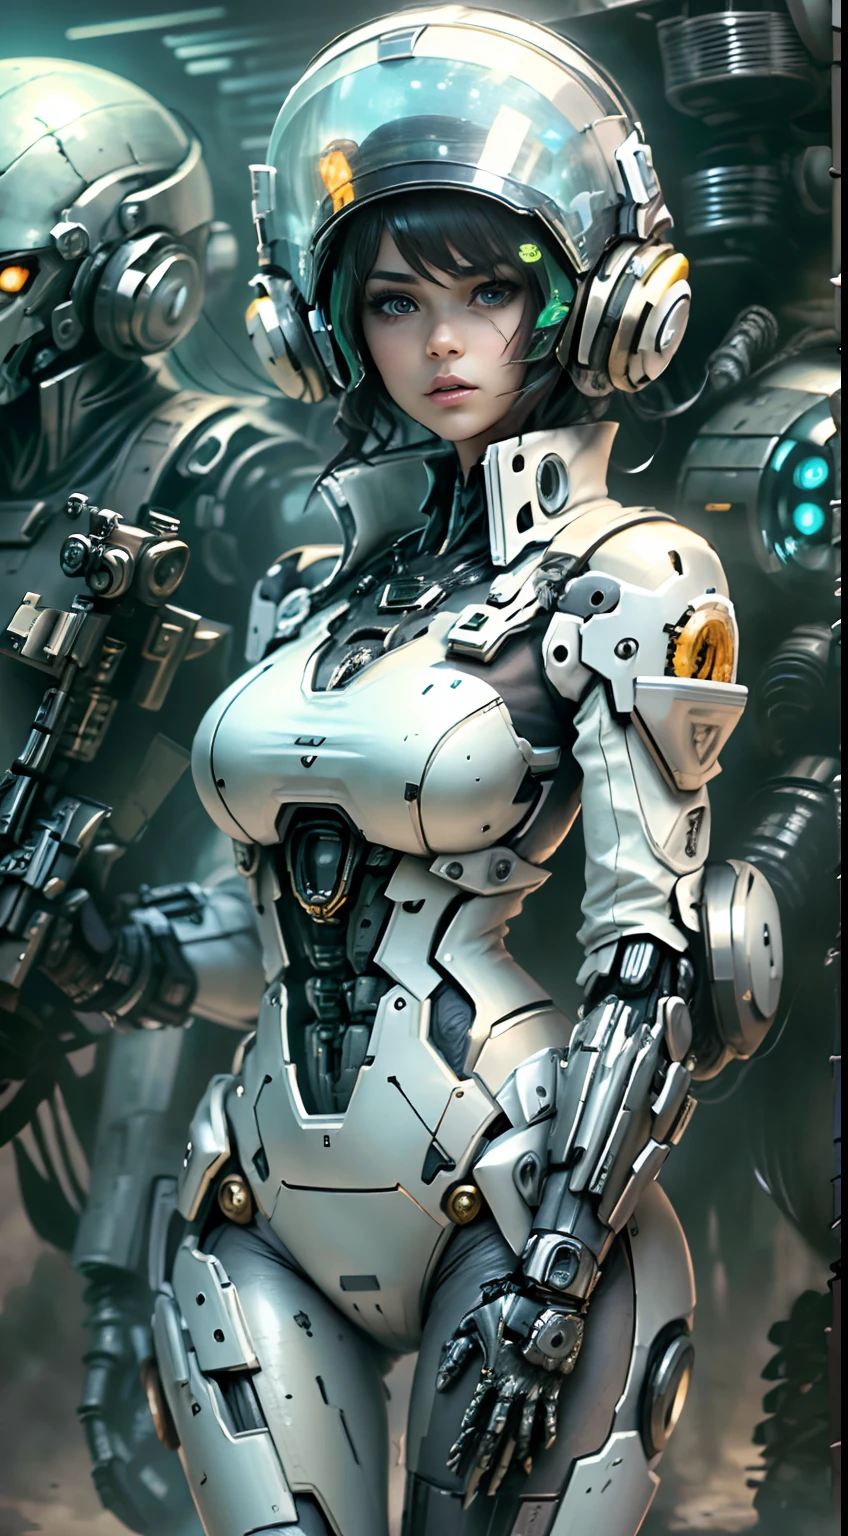 1 女孩白发士兵风格枪在背景中, 白衣机甲少女, 赛博朋克动漫机甲女孩, 穿着科幻军事盔甲, 美丽的黑色机器人女孩, 机器人 - 银色女孩, 费拉黑人, 守望先锋生态, 完美的动漫机器人女人, 蓝色瞳孔, 五指, CGhSociety 启发战场, 外星球, 外星人大战,